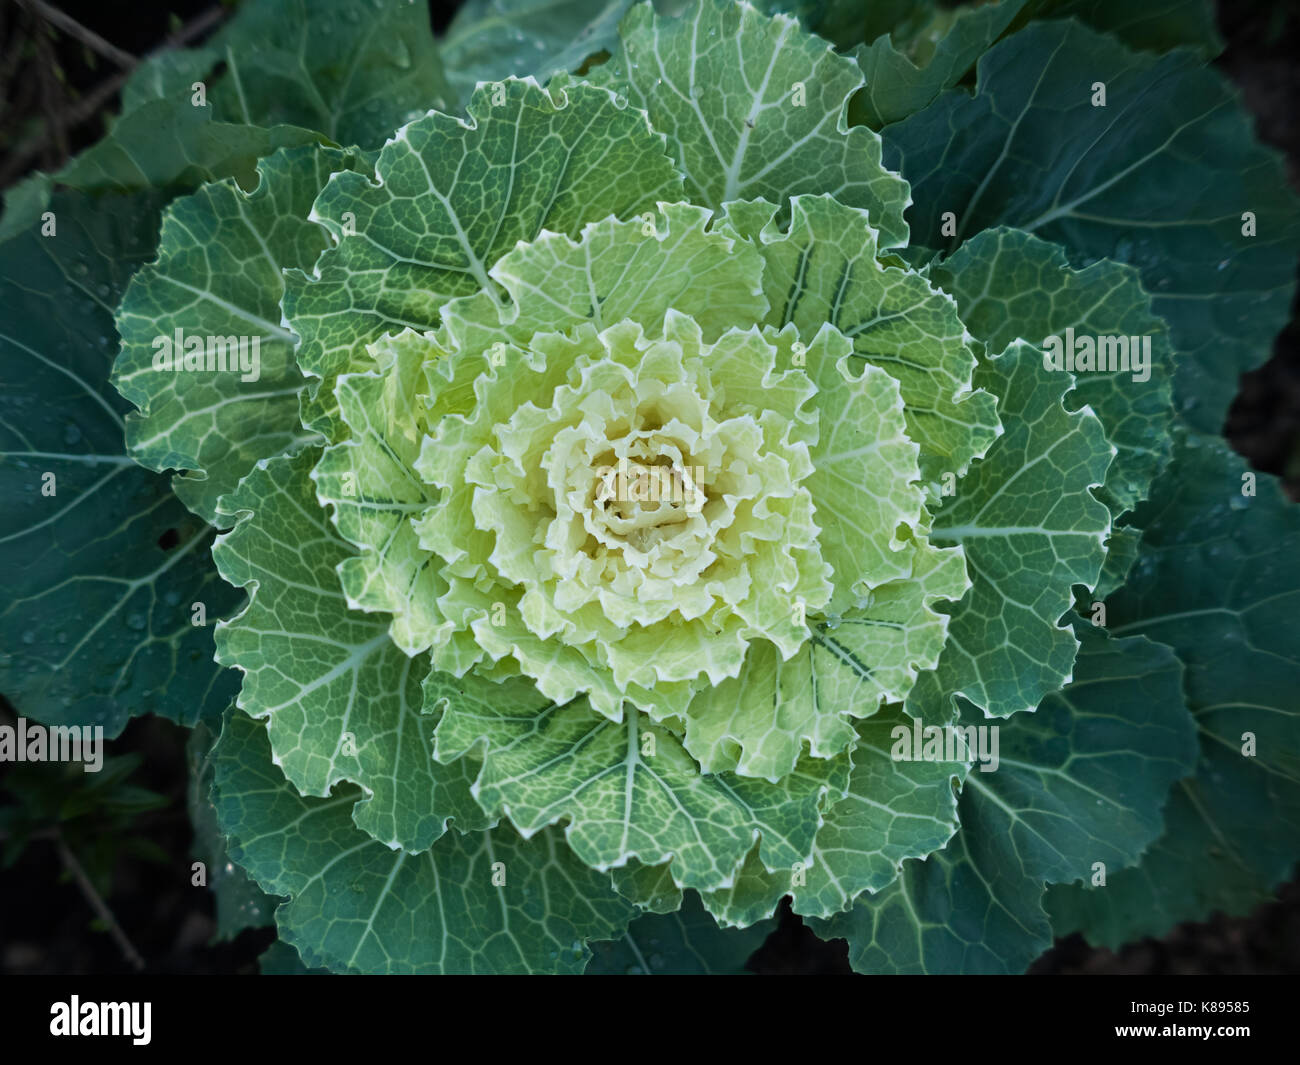 Stock Bild von einem Kohl oder Kopfkohl grünen Zweijährige Pflanze, die als jährlicher Gemüse Ernte angebaut. Stockfoto